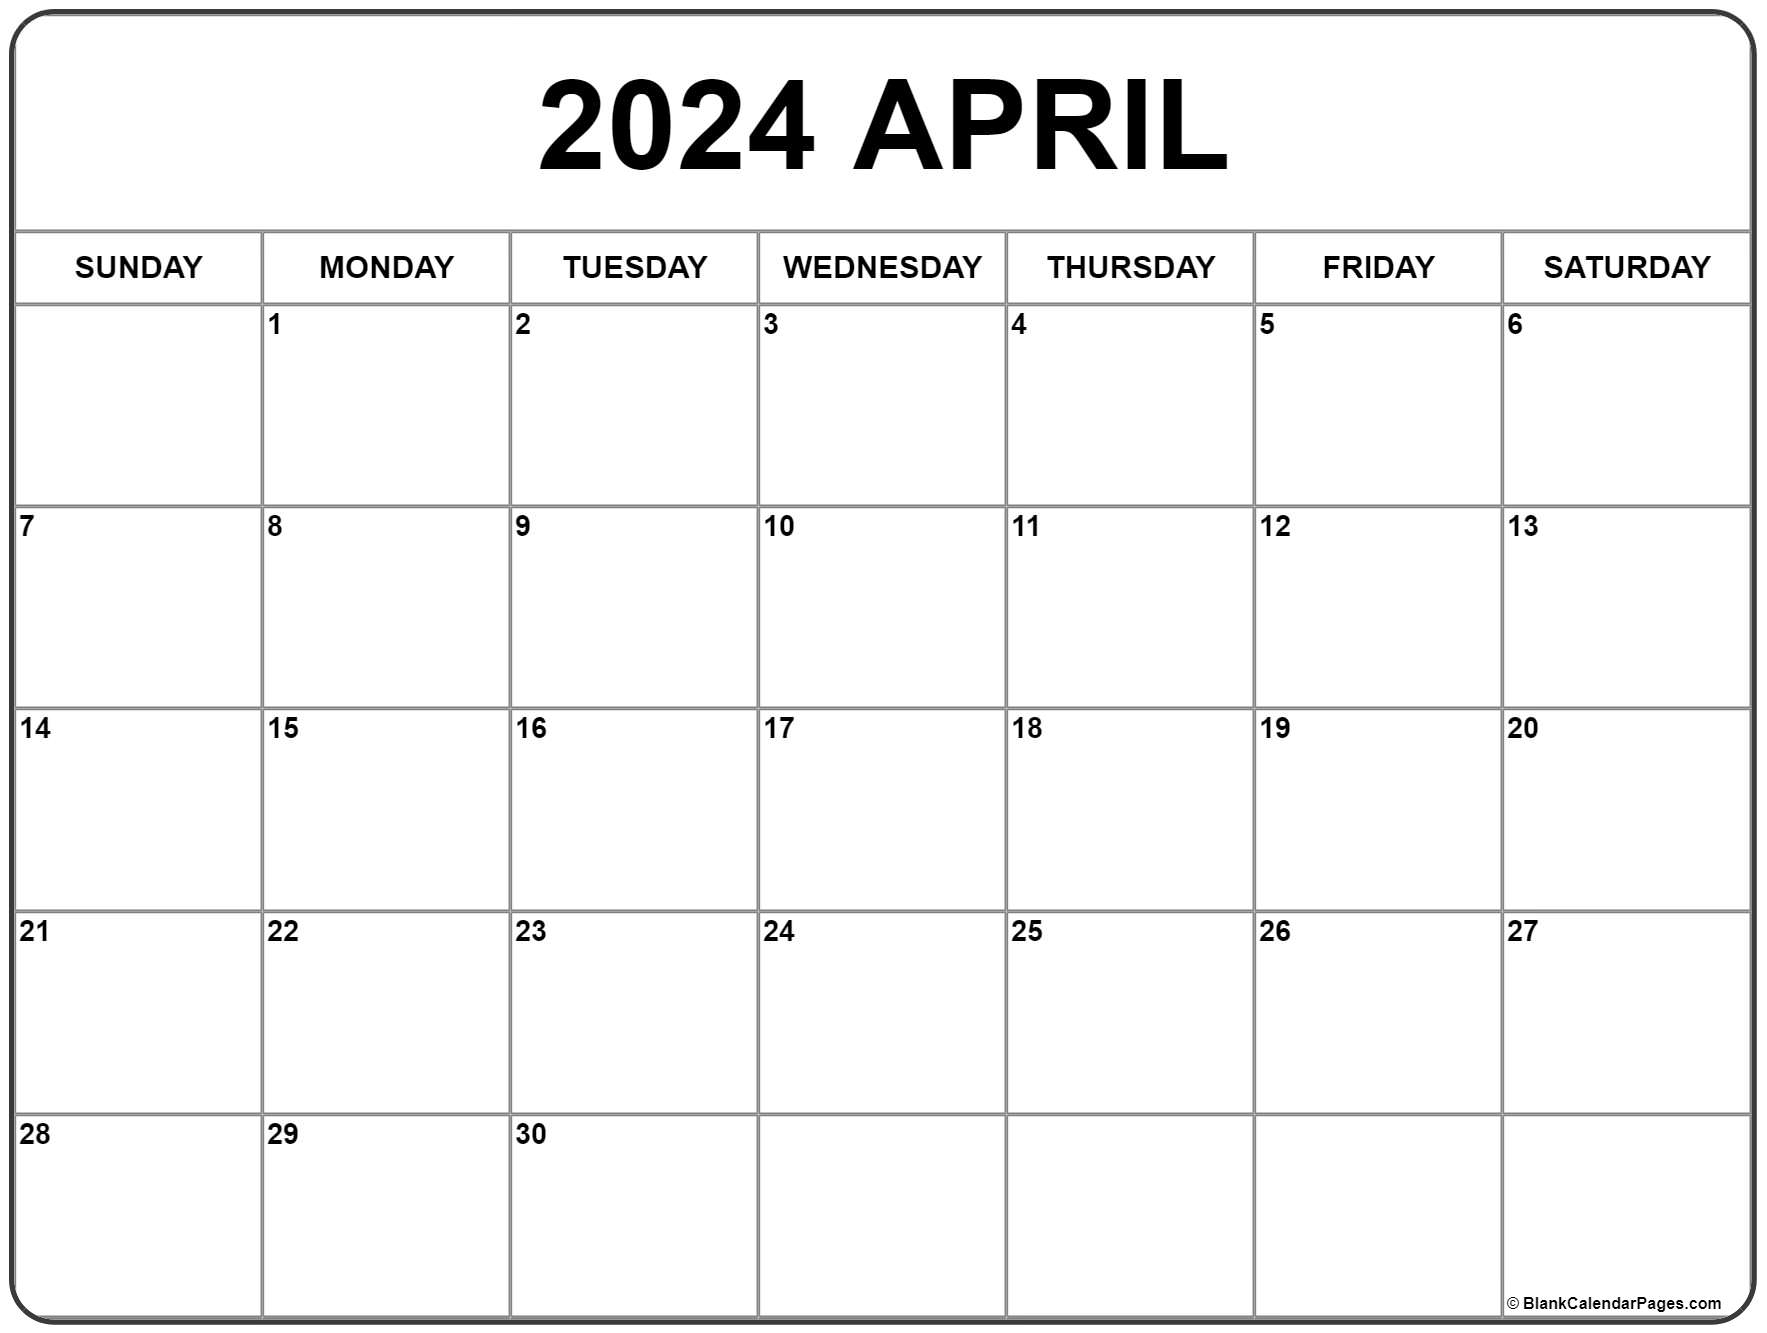 April 2024 Calendar | Free Printable Calendar for Calendar April 2024 Free Printable